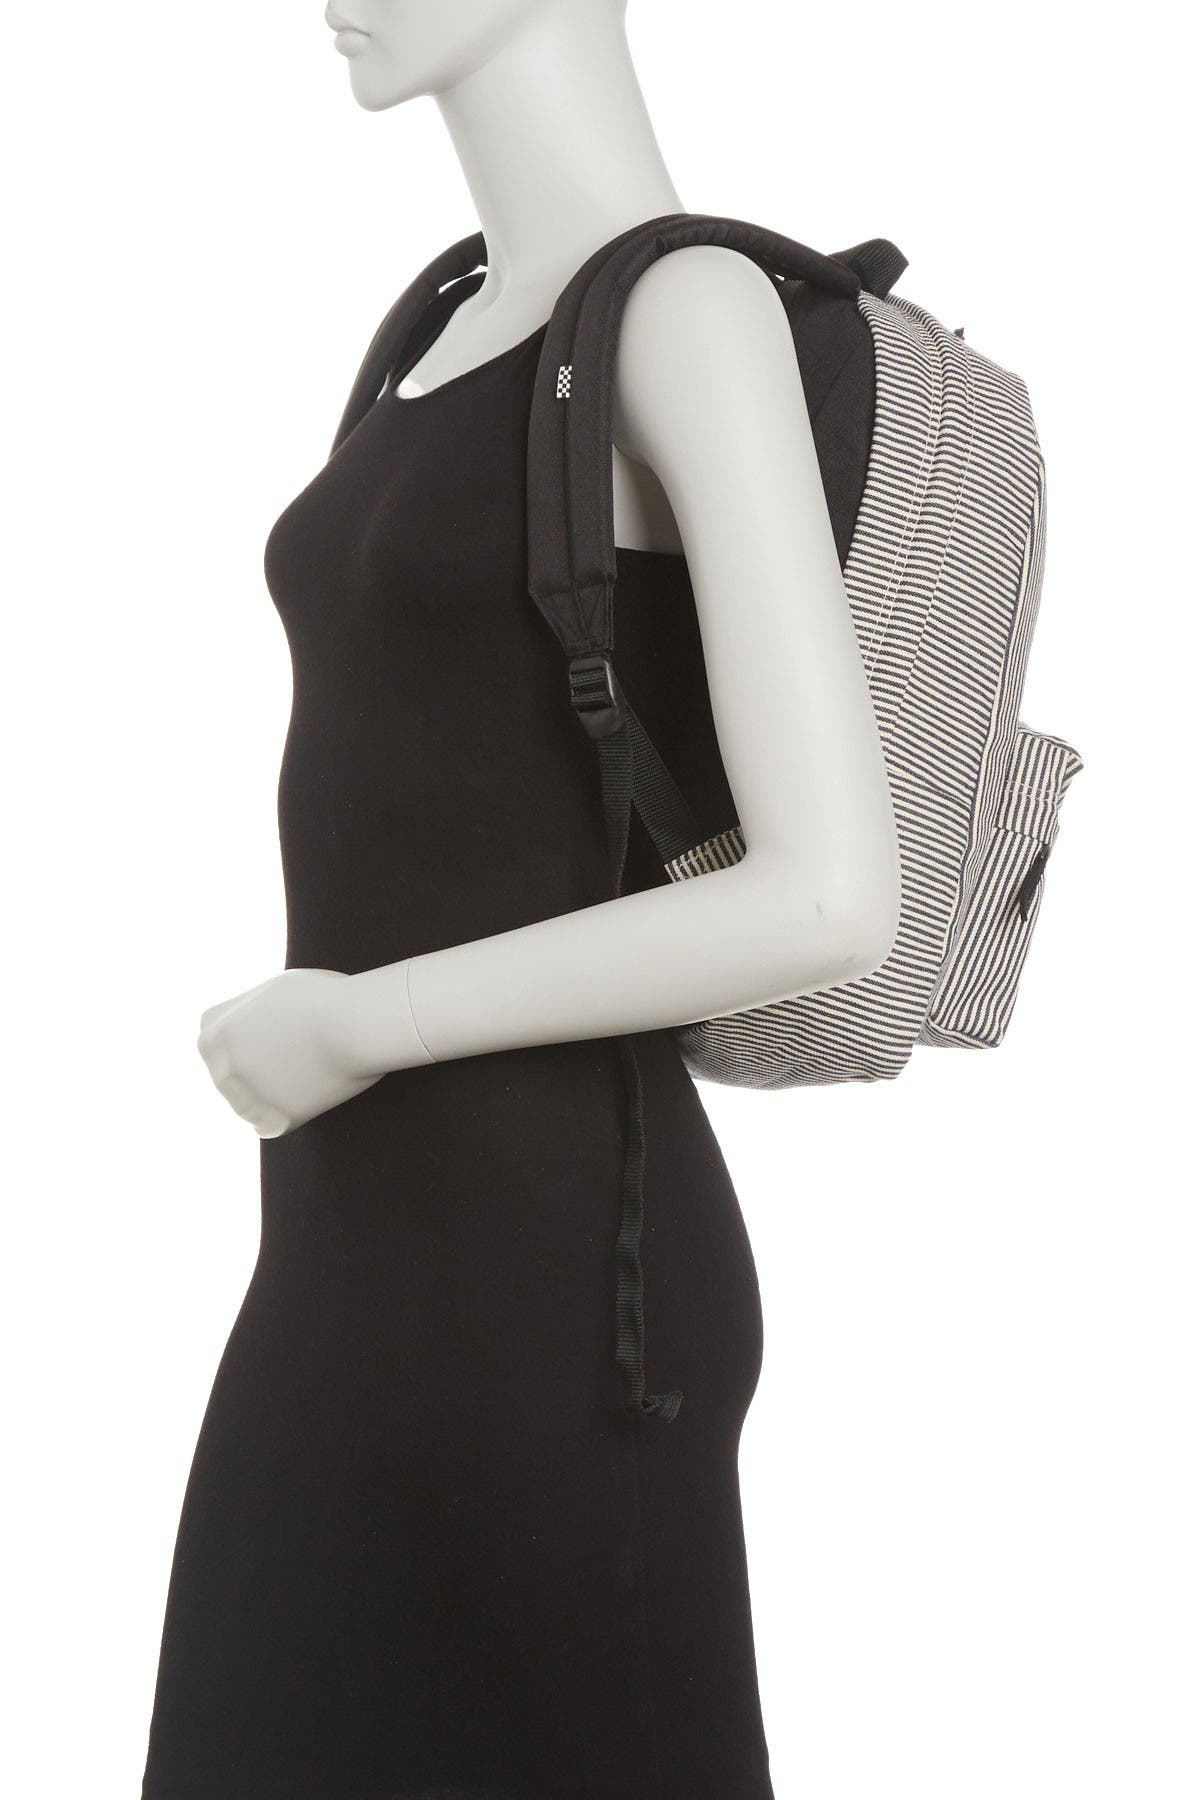 deana iii backpack